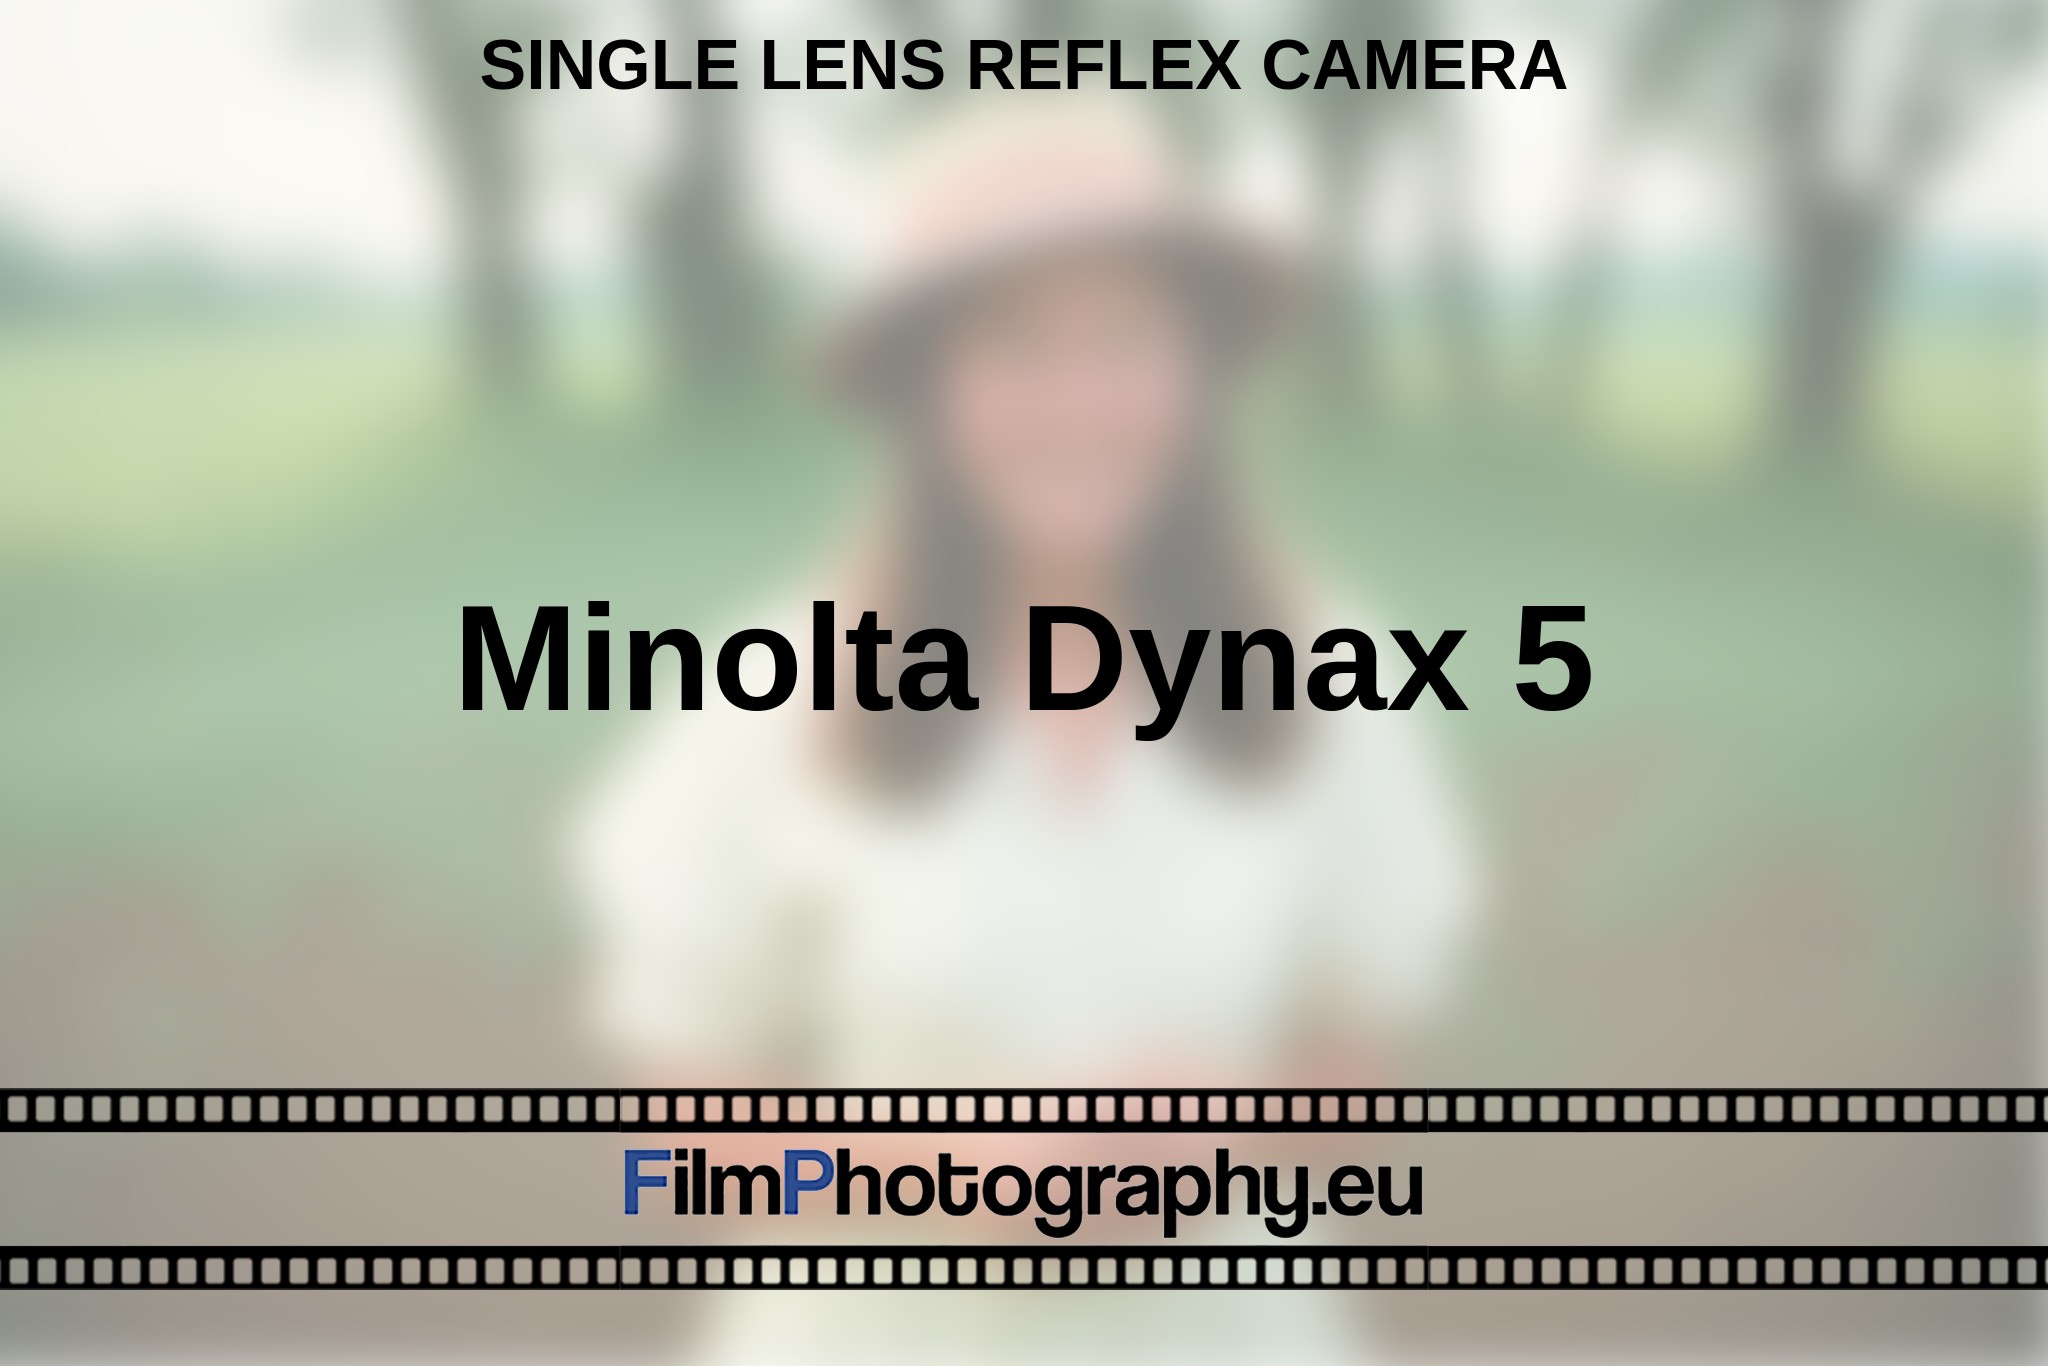 minolta-dynax-5-single-lens-reflex-camera-en-bnv.jpg